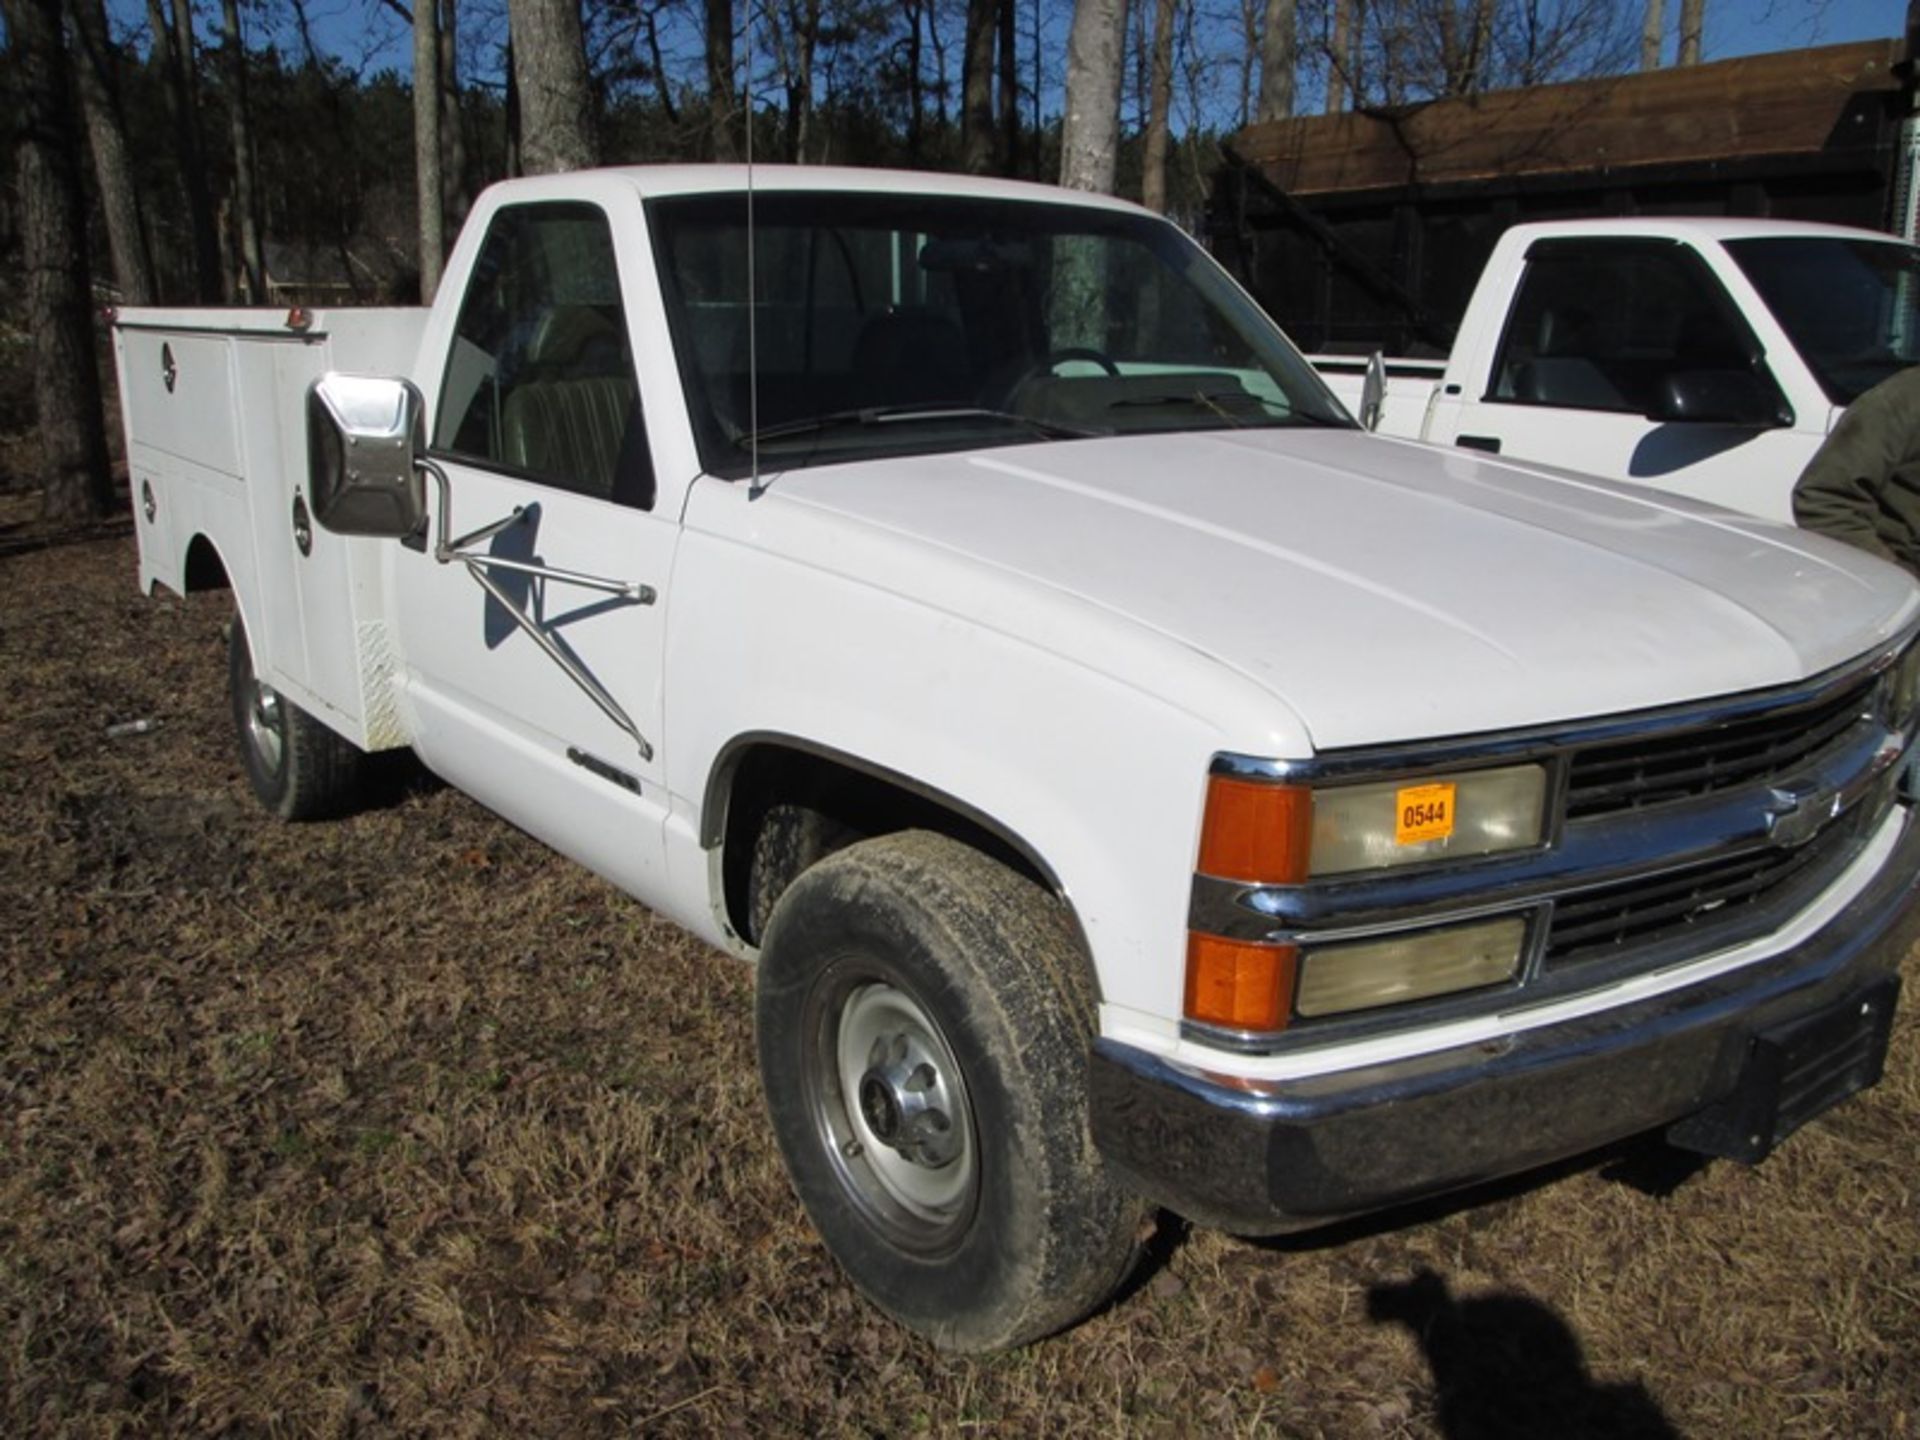 1994 Chevrolet 2500 service truck vin #1GBGC24K5REZ53929  153,988 miles